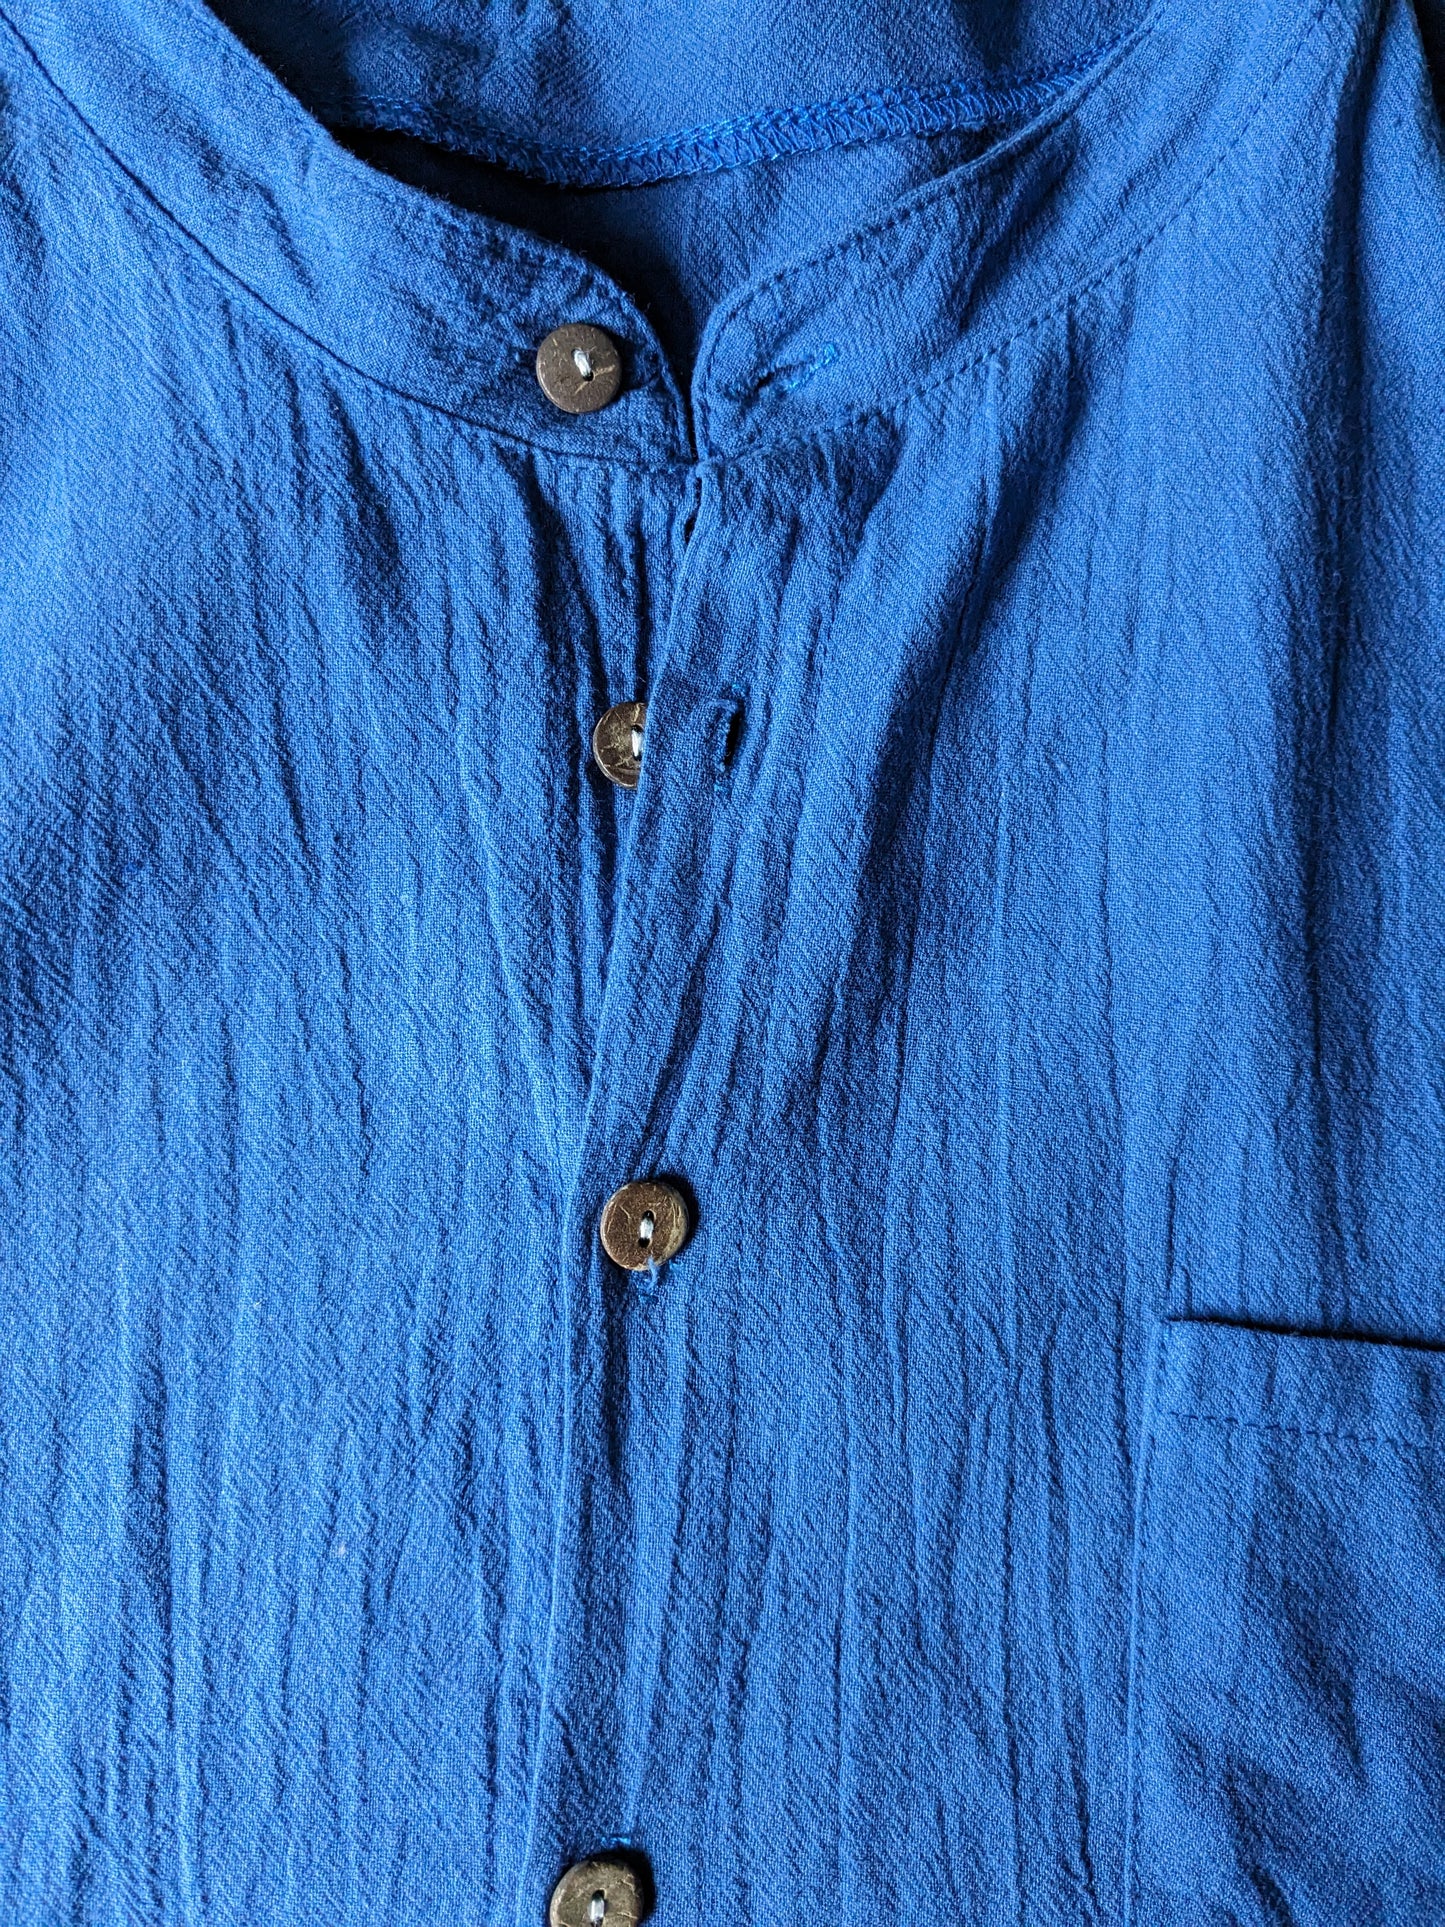 Vintage overhemd korte mouw met Mao / opstaande kraag. Blauw. Maat M.